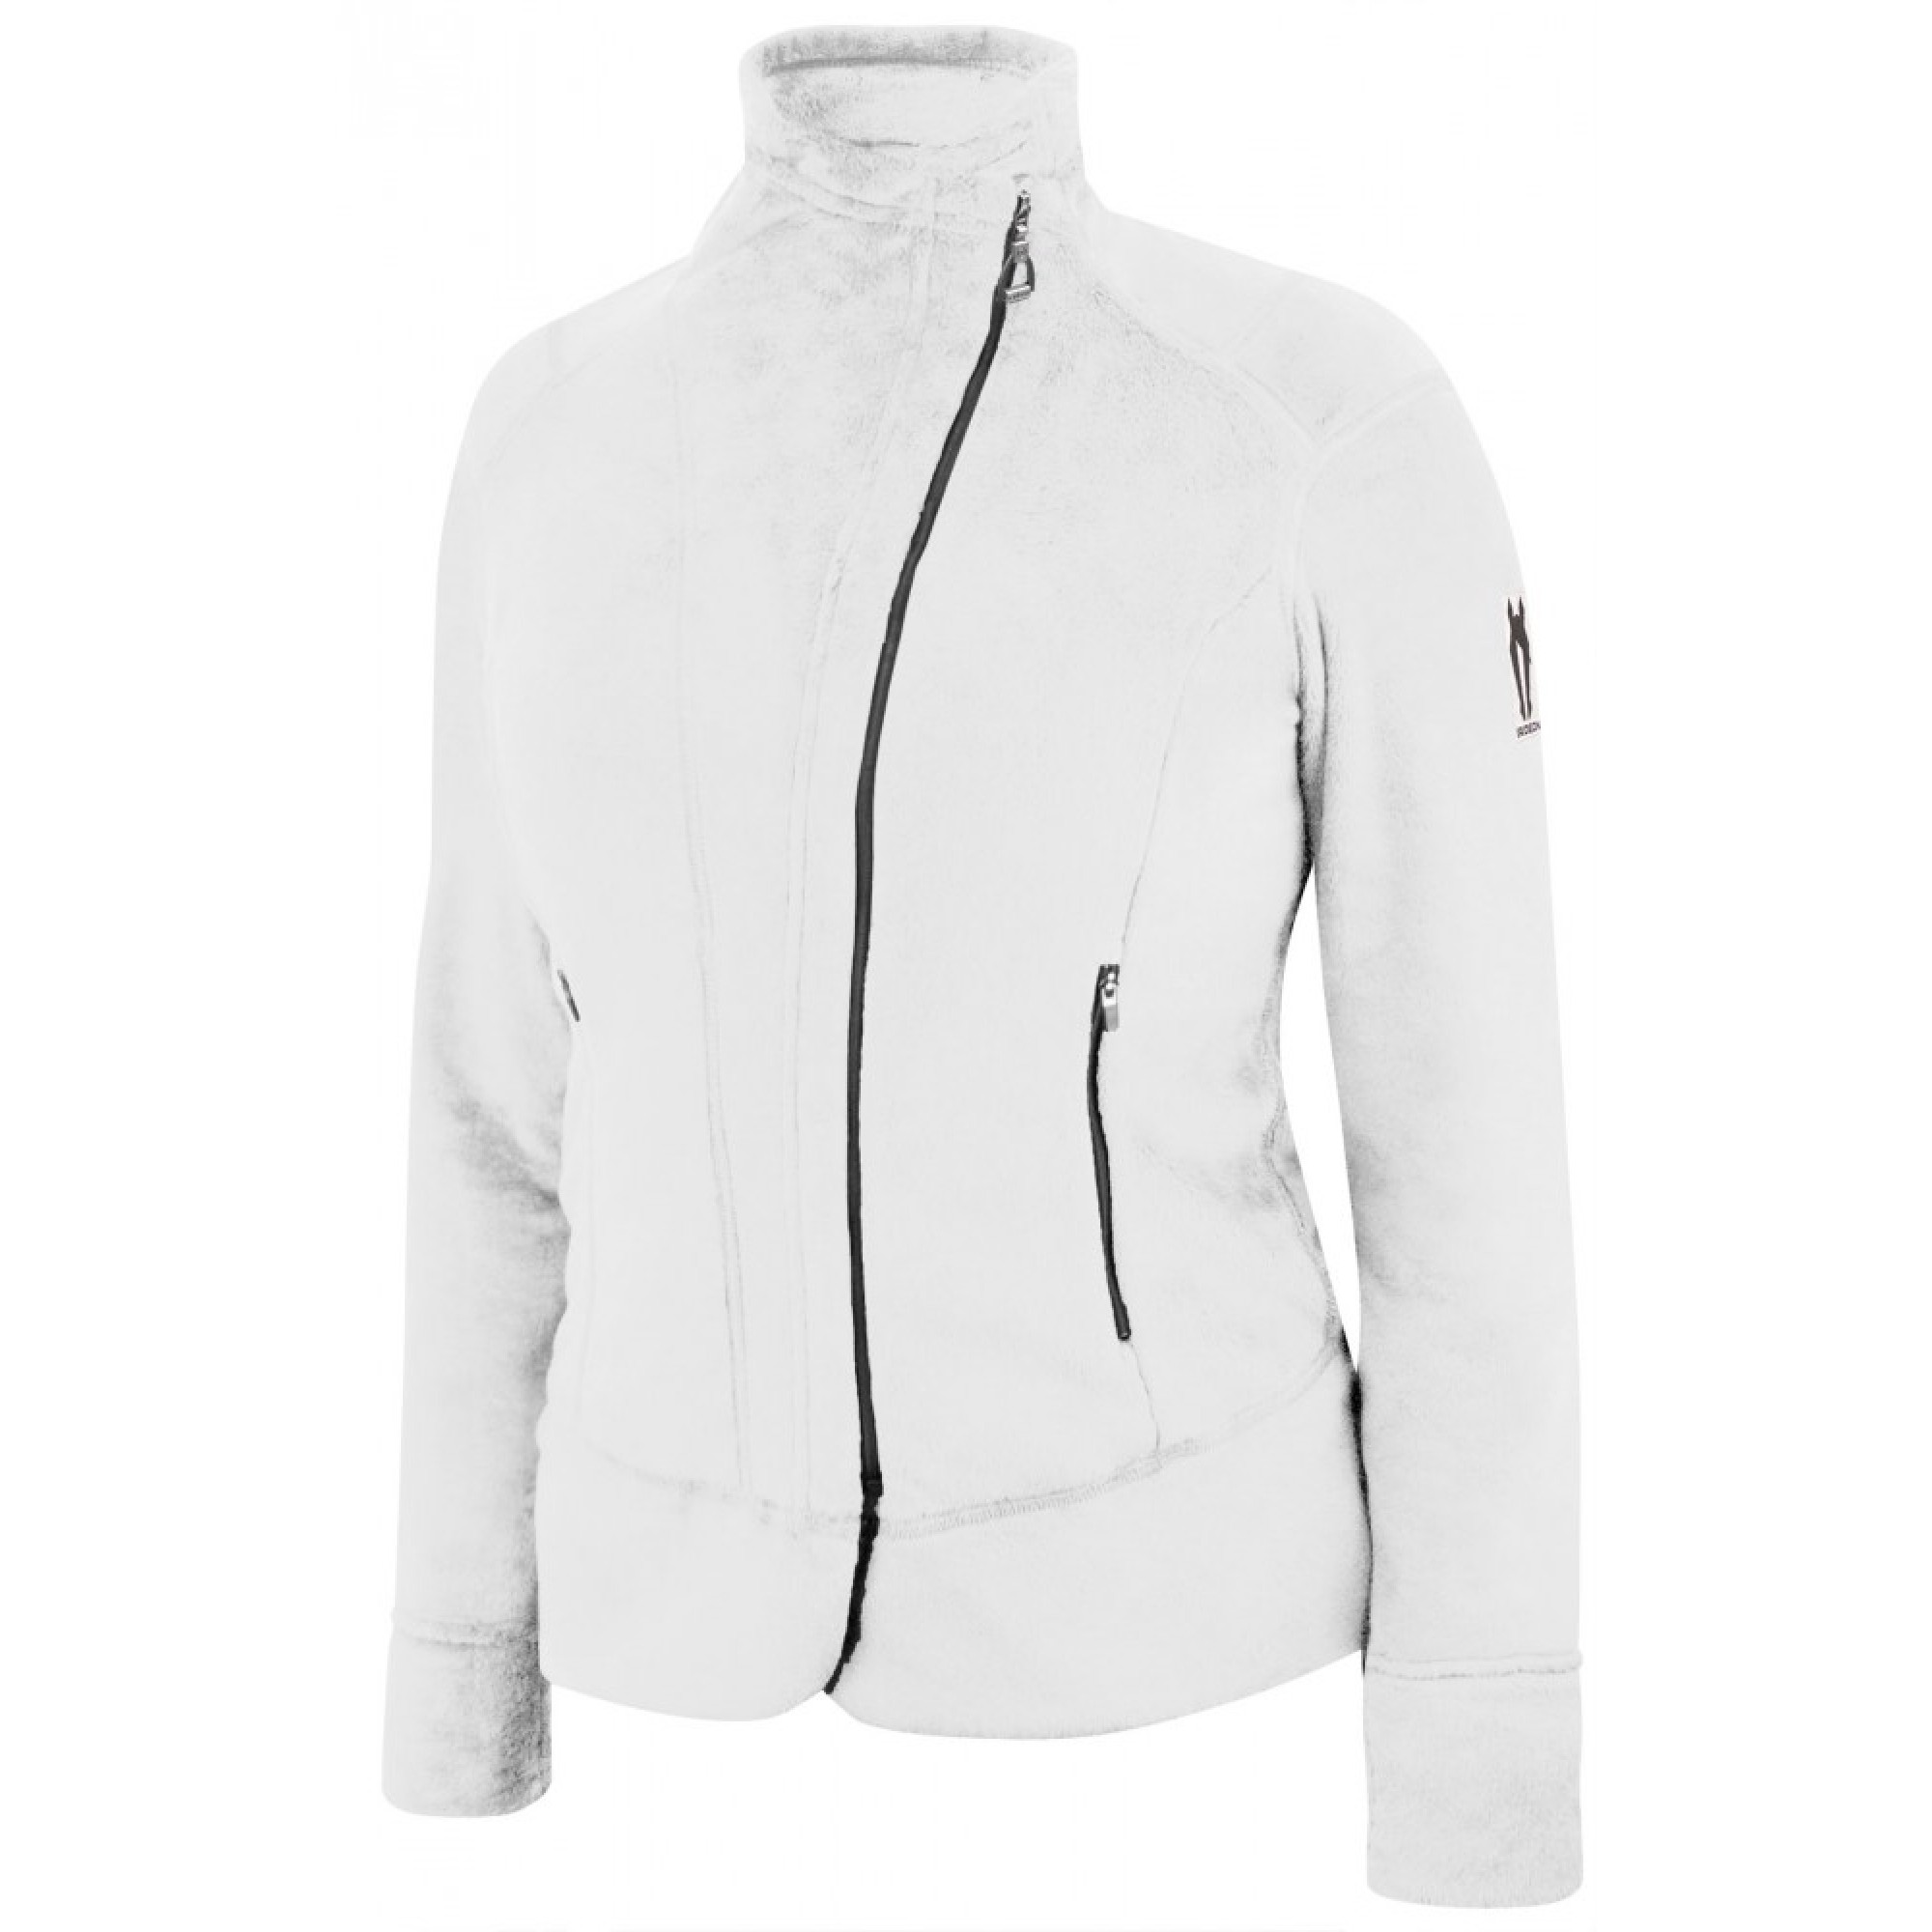 IRIDEON® Island fleece jacket